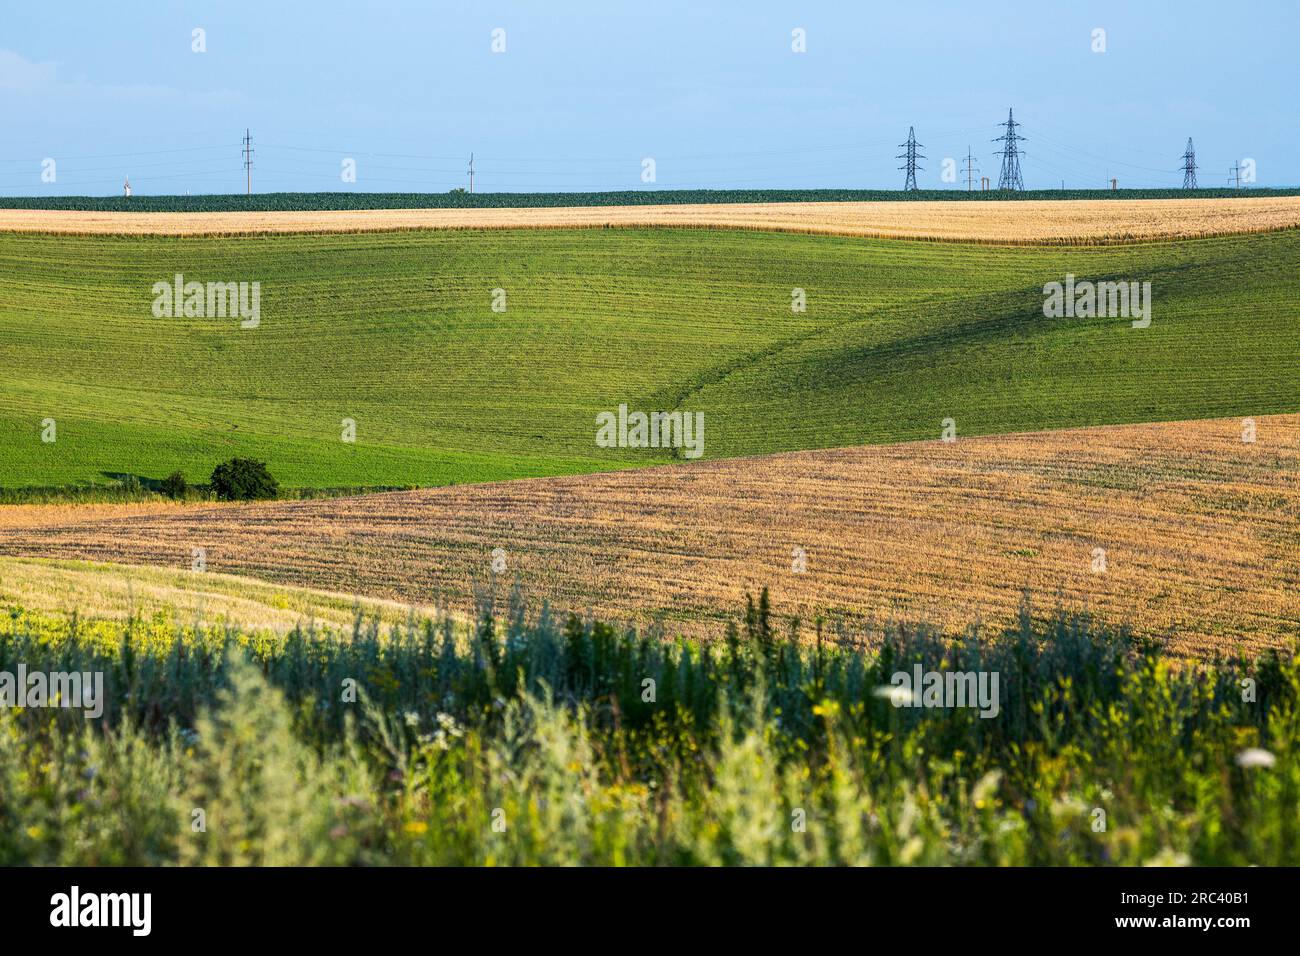 Endlose Felder an den Hängen der Hügel werden mit verschiedenen Kulturen gesät. Friedliche ländliche Landschaft. Sommerabend in der Westukraine bei Rivne Stockfoto